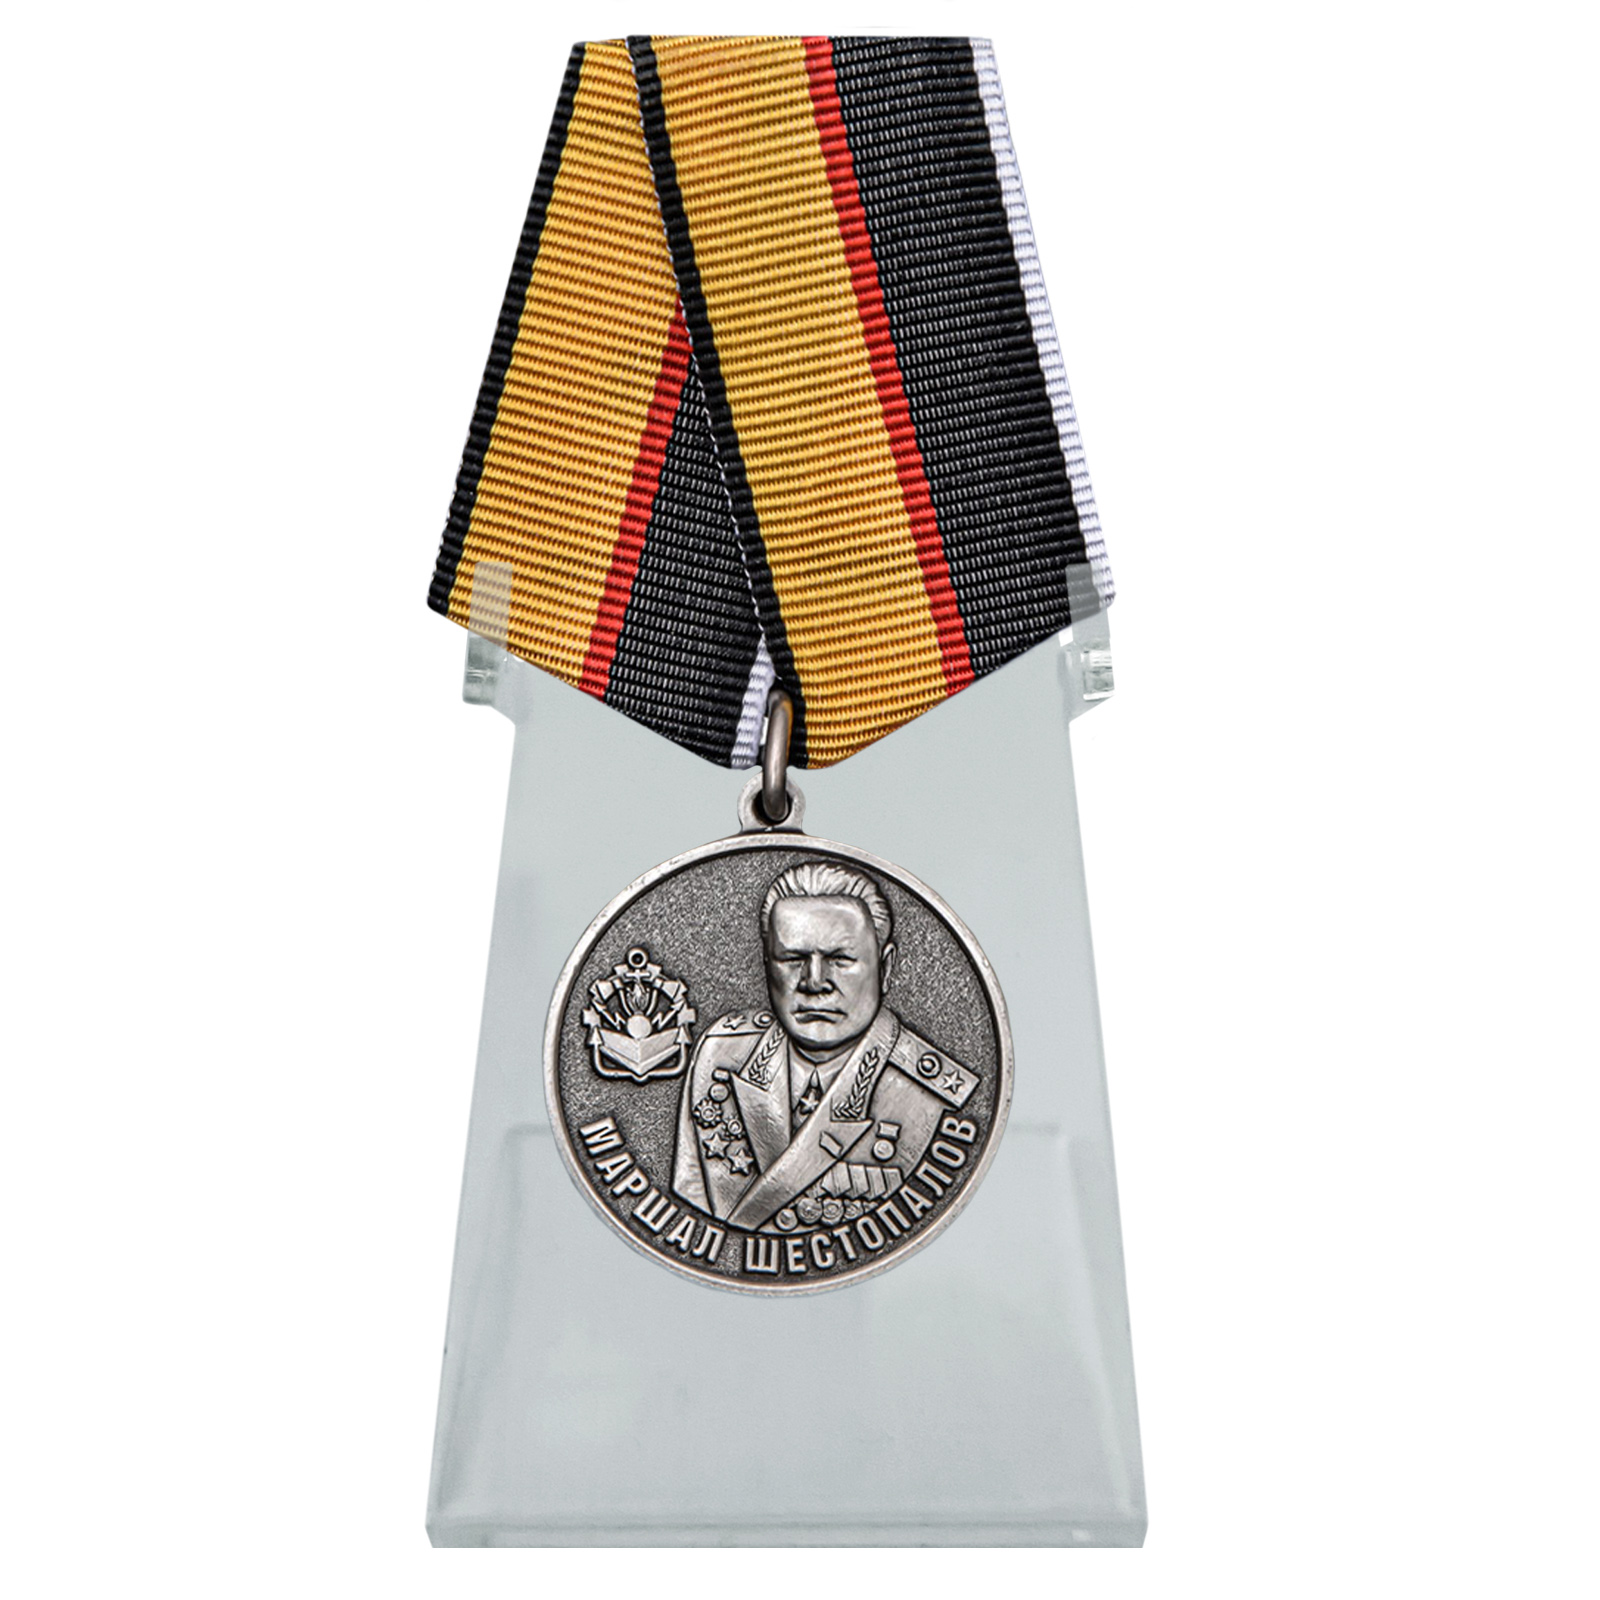 Медаль "Маршал Шестопалов" на подставке